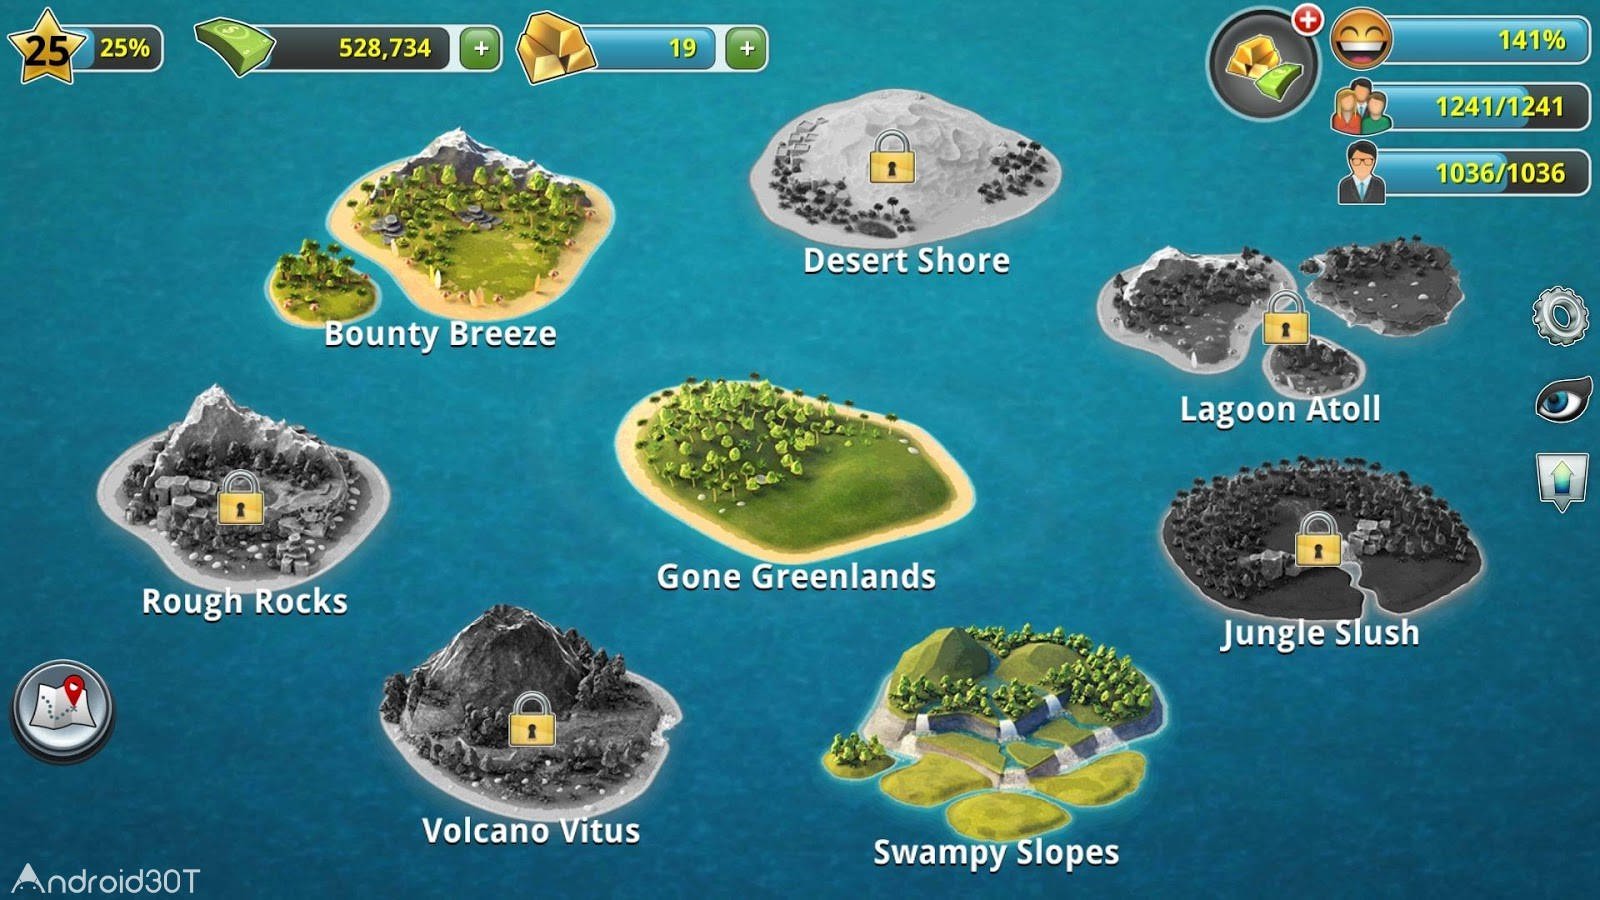 دانلود City Island 3 – Building Sim 3.3.1 – سیتی ایسلند 3 اندروید